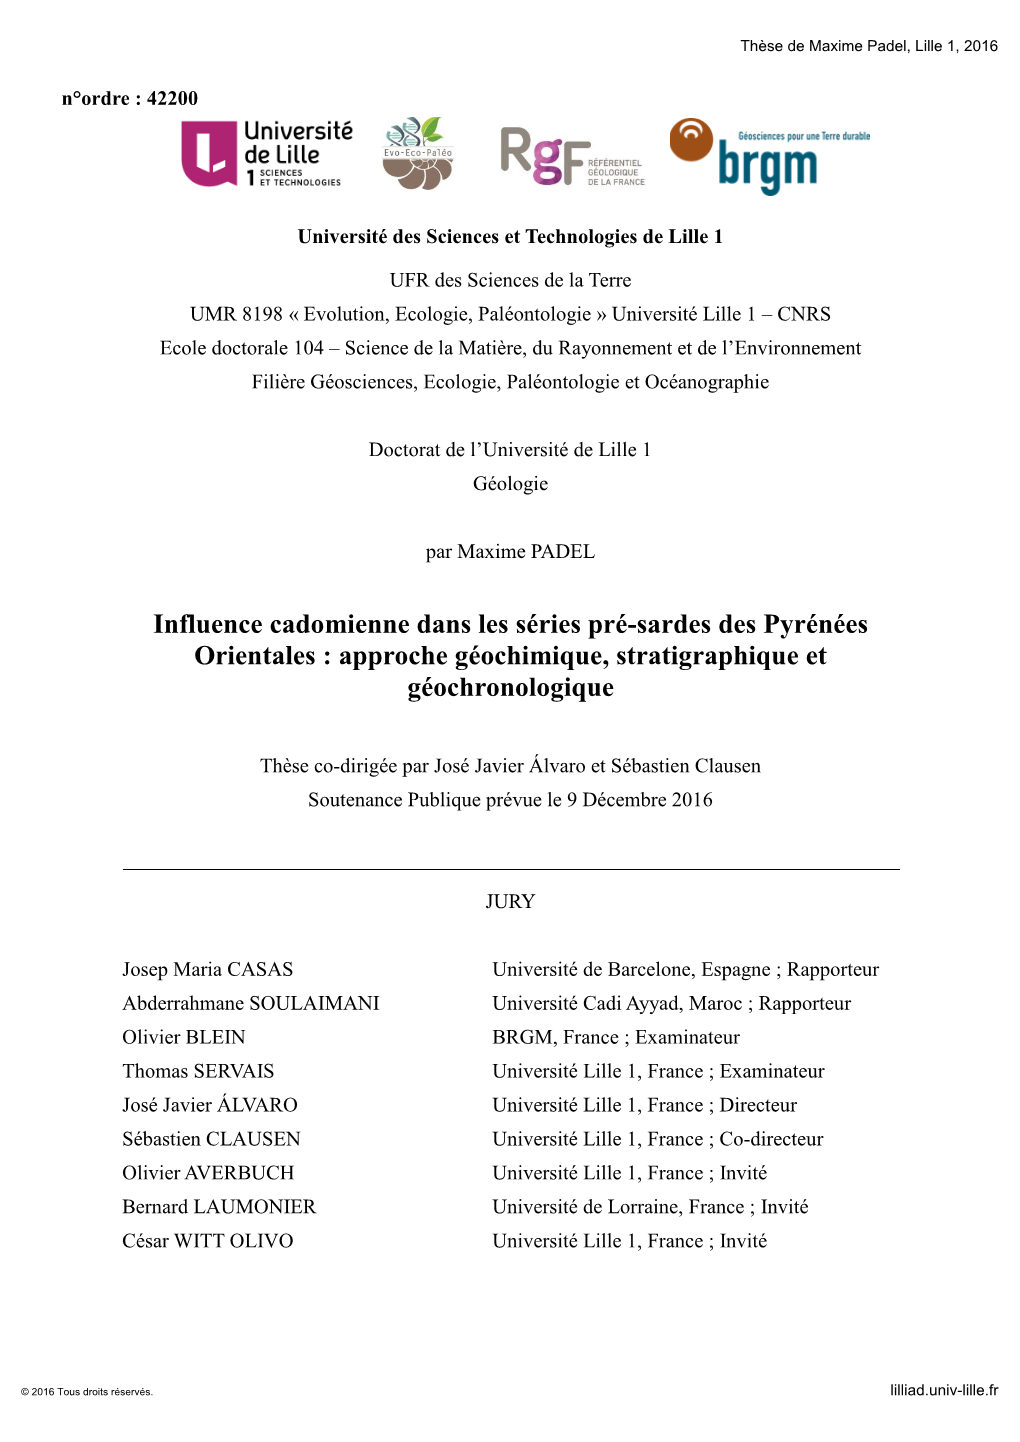 Influence Cadomienne Dans Les Séries Pré-Sardes Des Pyrénées Orientales : Approche Géochimique, Stratigraphique Et Géochronologique